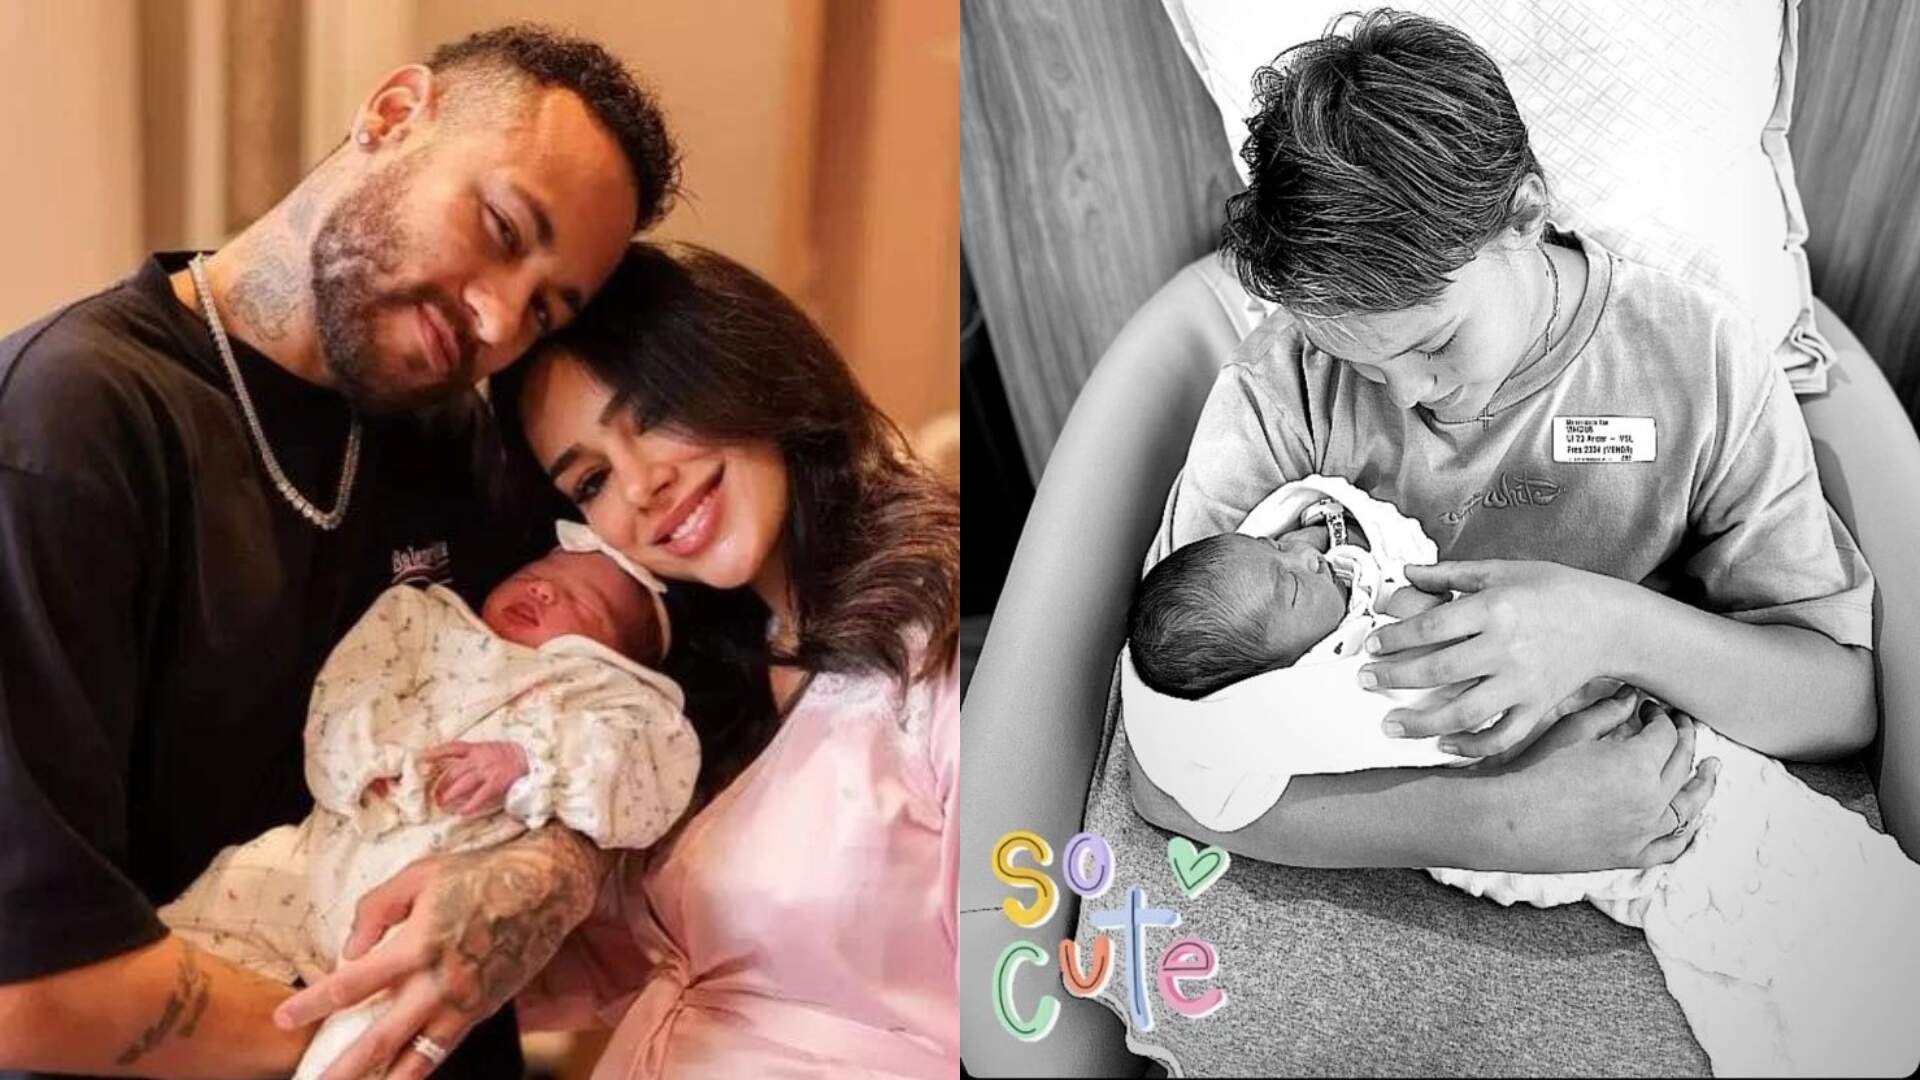 Pai babão! Neymar Jr. se derrete ao mostrar o primeiro encontro dos dois filhos: “Meus maiores amores”